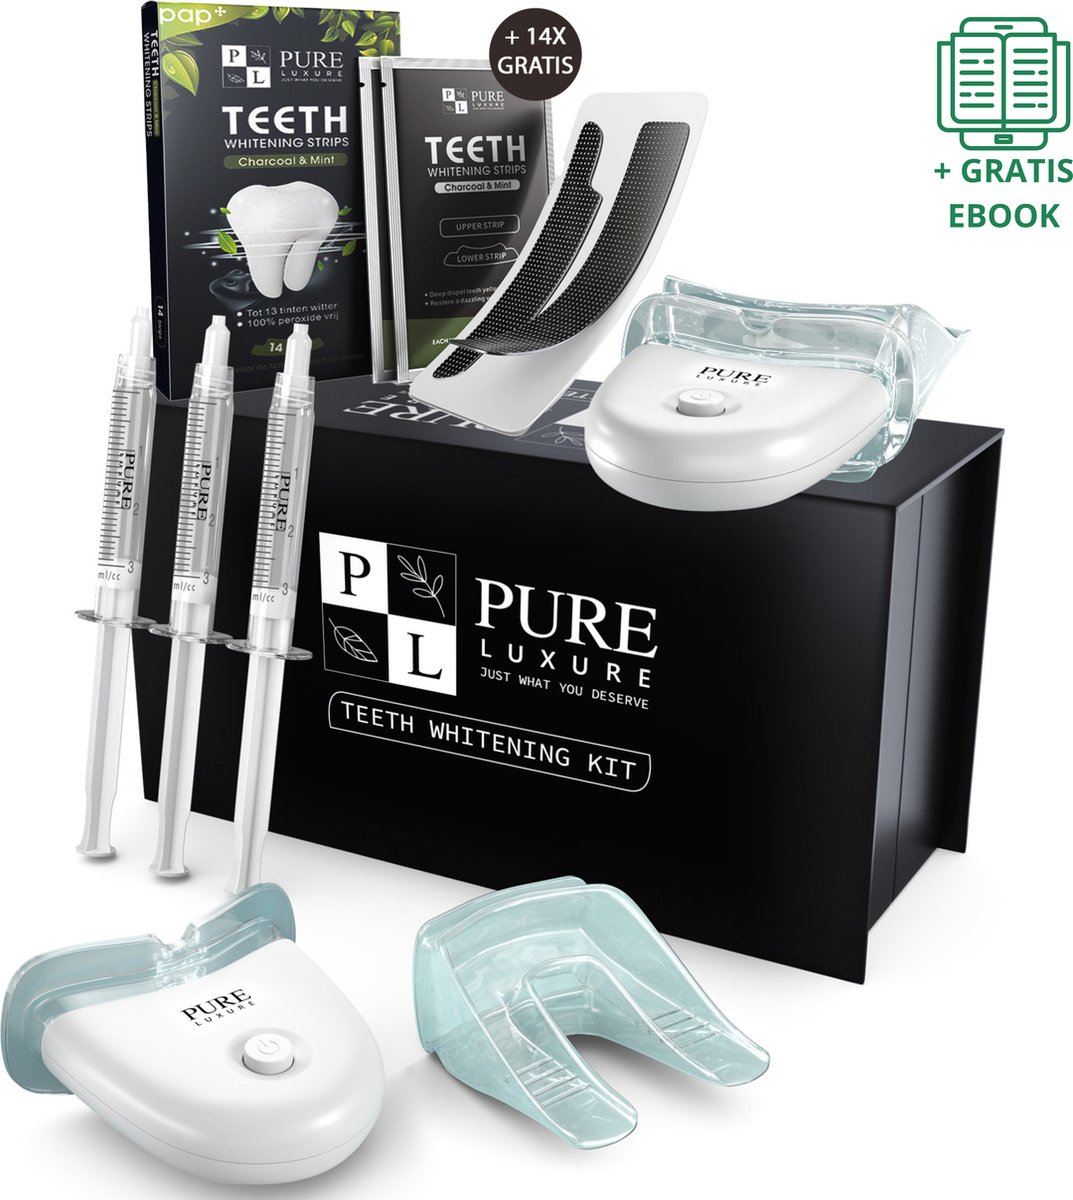 Pure Luxure Teeth whitening kit zonder peroxide - tanden bleken - tandenbleekset - tandenblekers - witte tandenbleekstrips - met handleiding en ebook - Valentijn cadeautje voor haar vrouw review